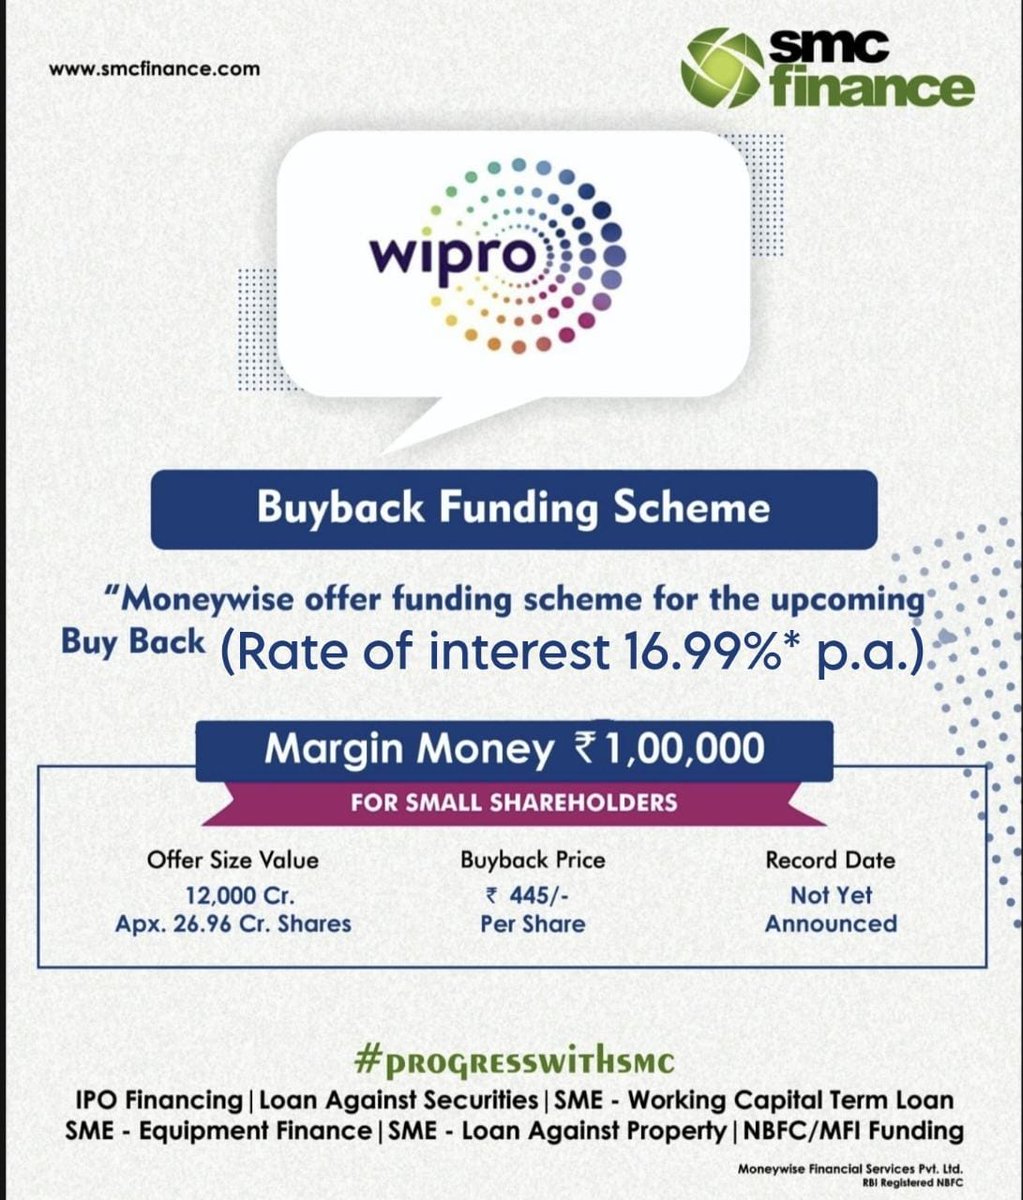 Wipro Buyback :-